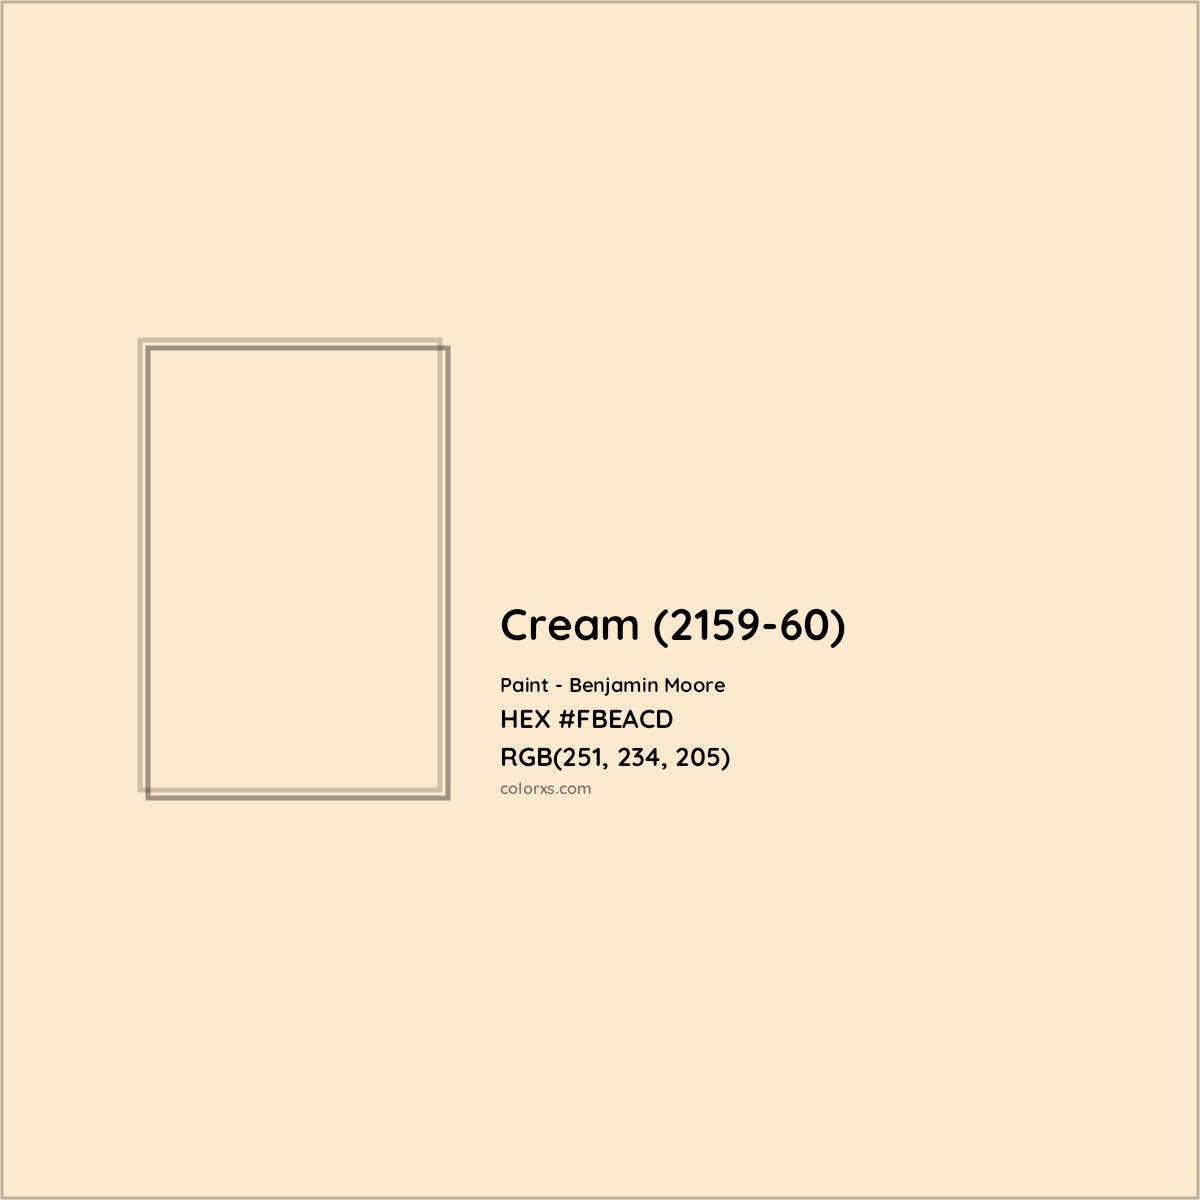 HEX #FBEACD Cream (2159-60) Paint Benjamin Moore - Color Code